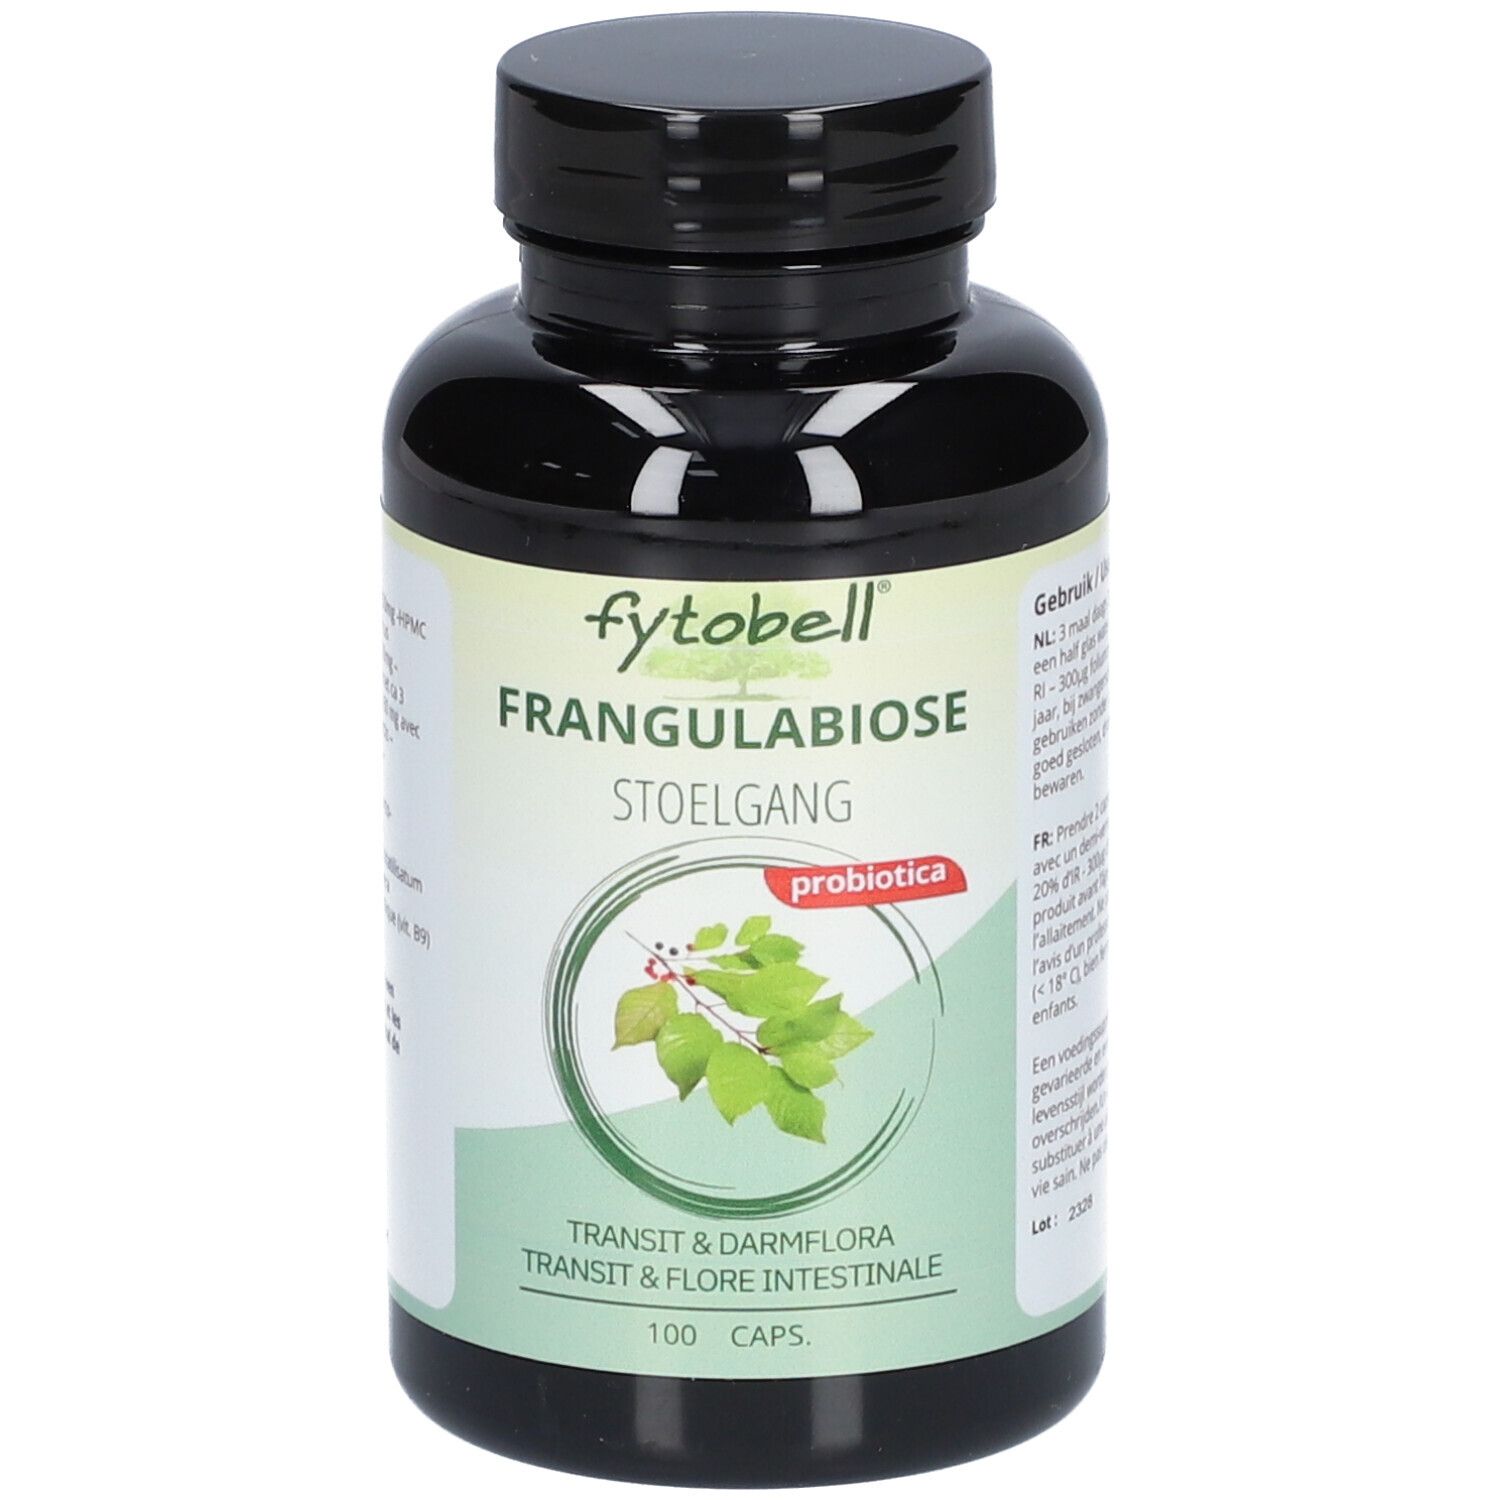 Fytobell Frangulabiose